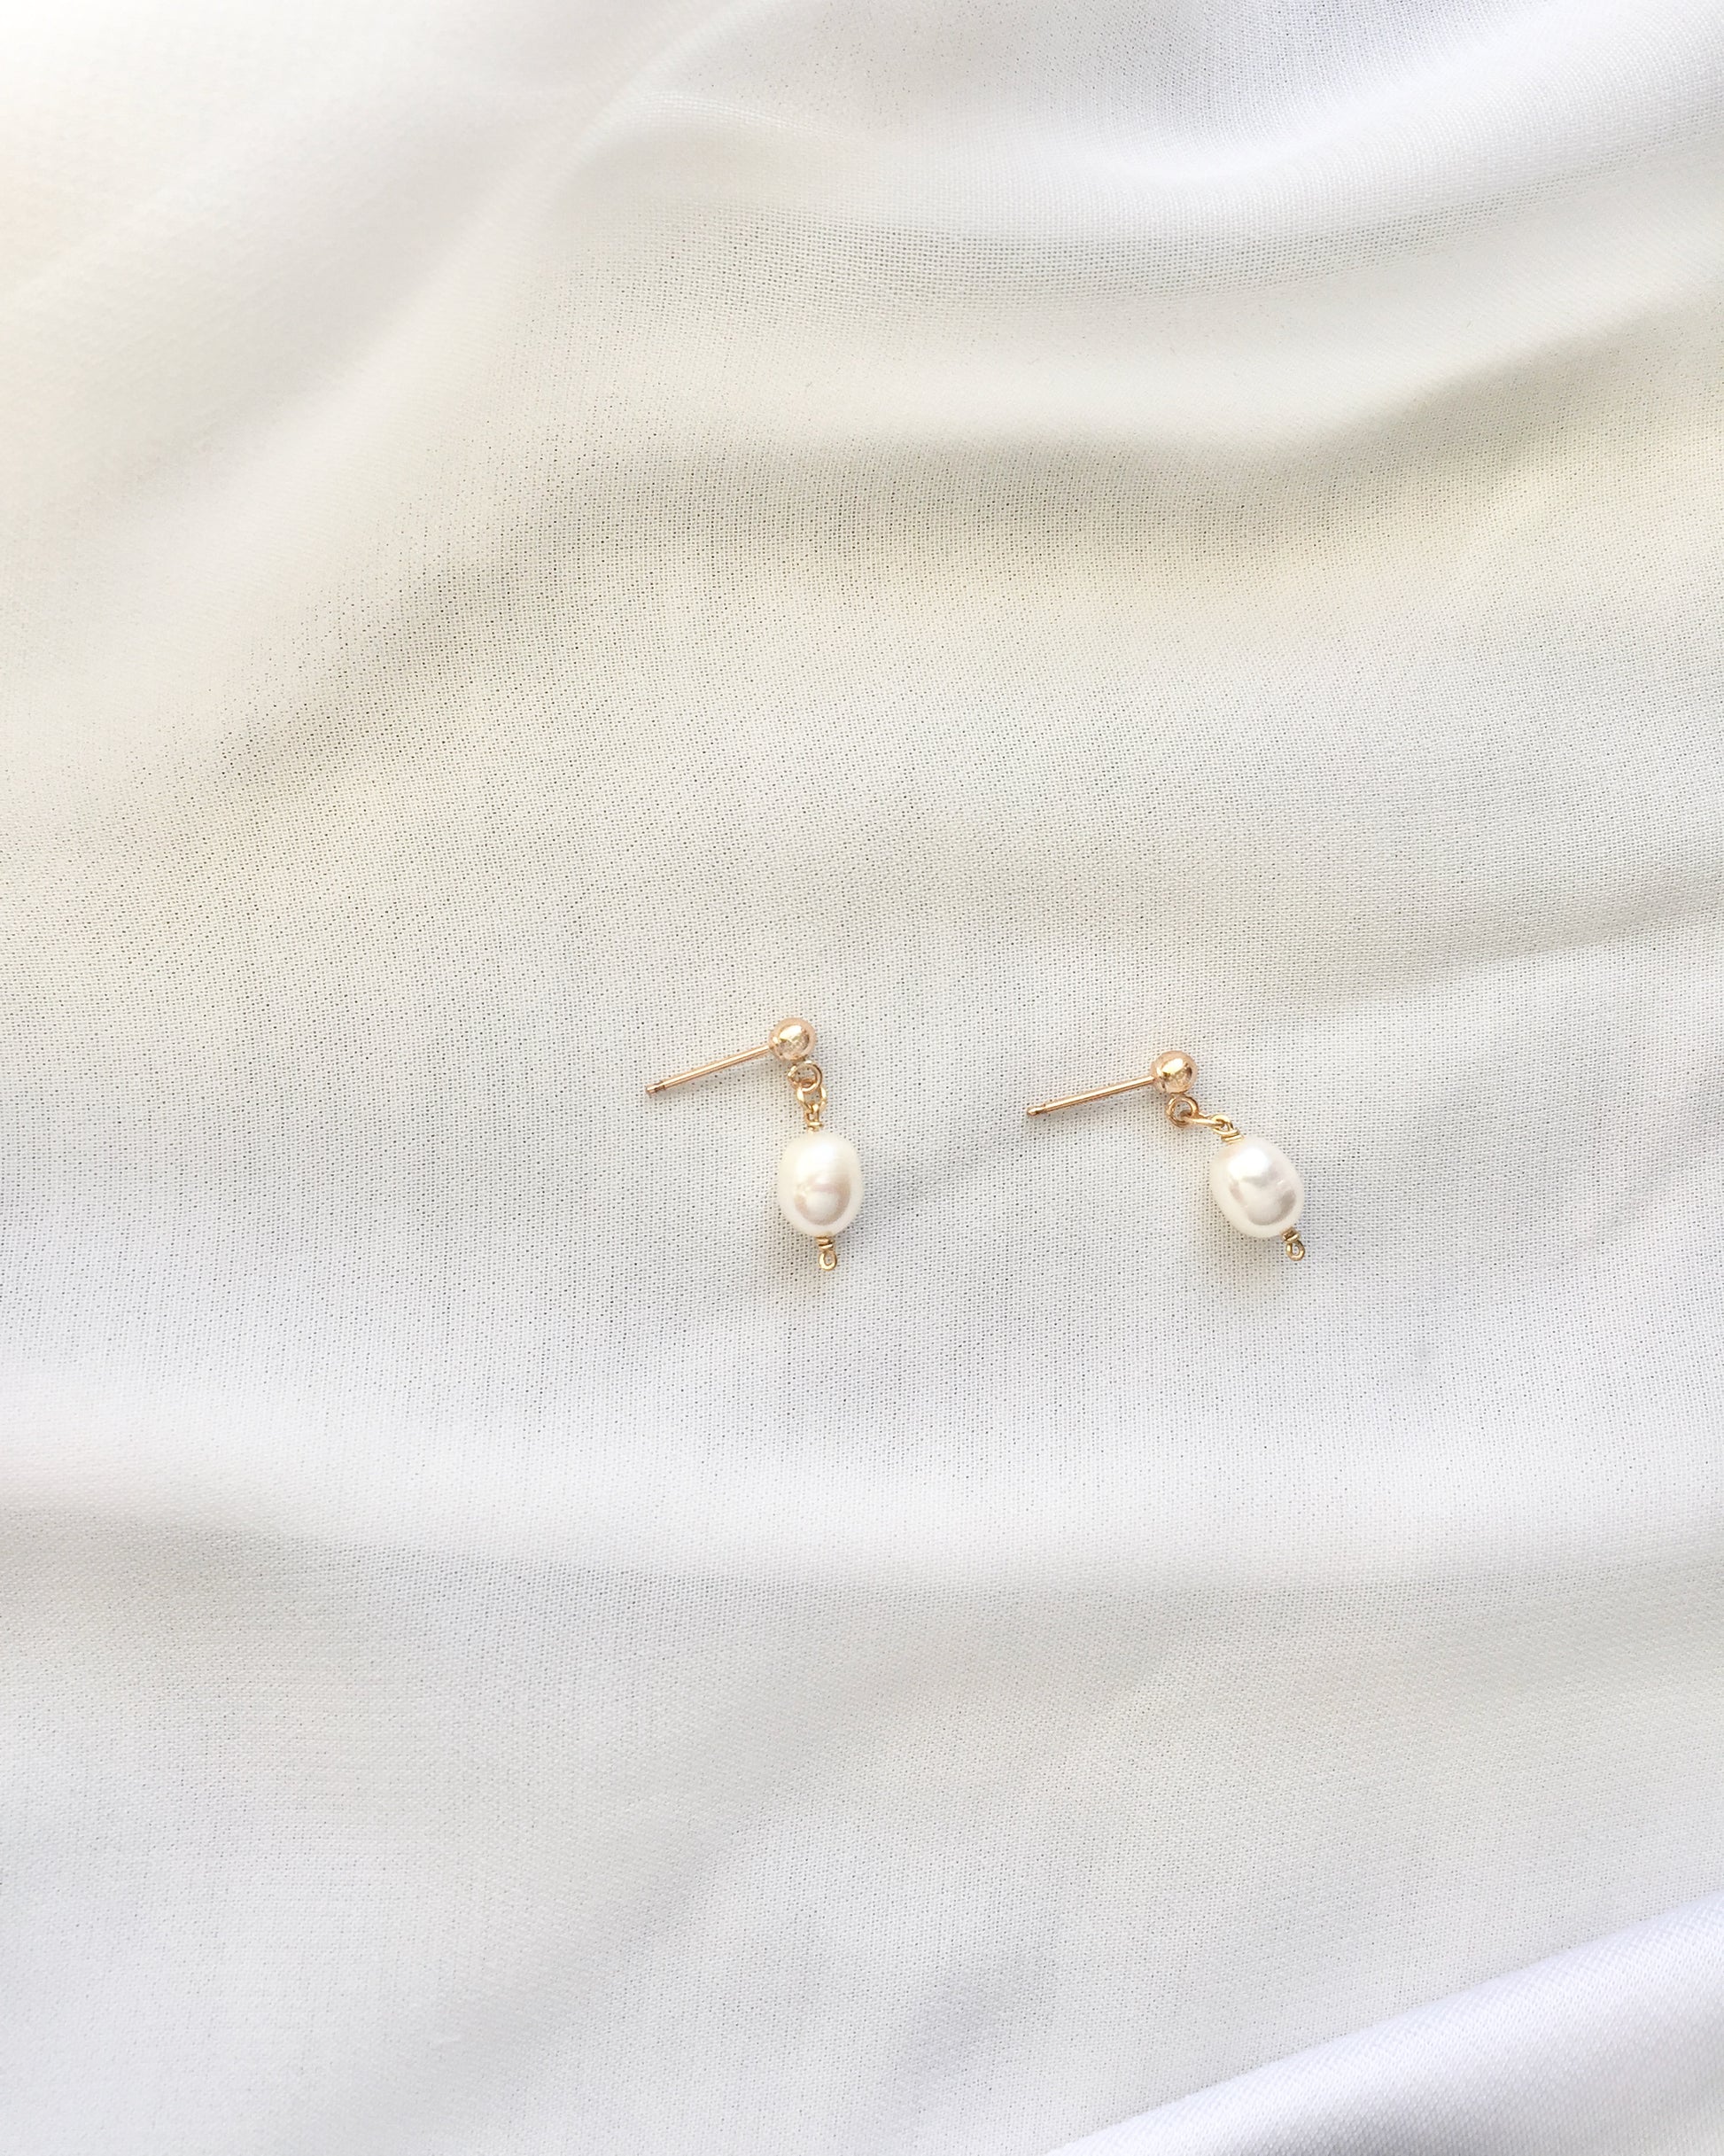 Delicate Pearl Earrings | Elegant Dainty Everyday Earrings | Simple Pearl Drop Earrings | IB Jewelry